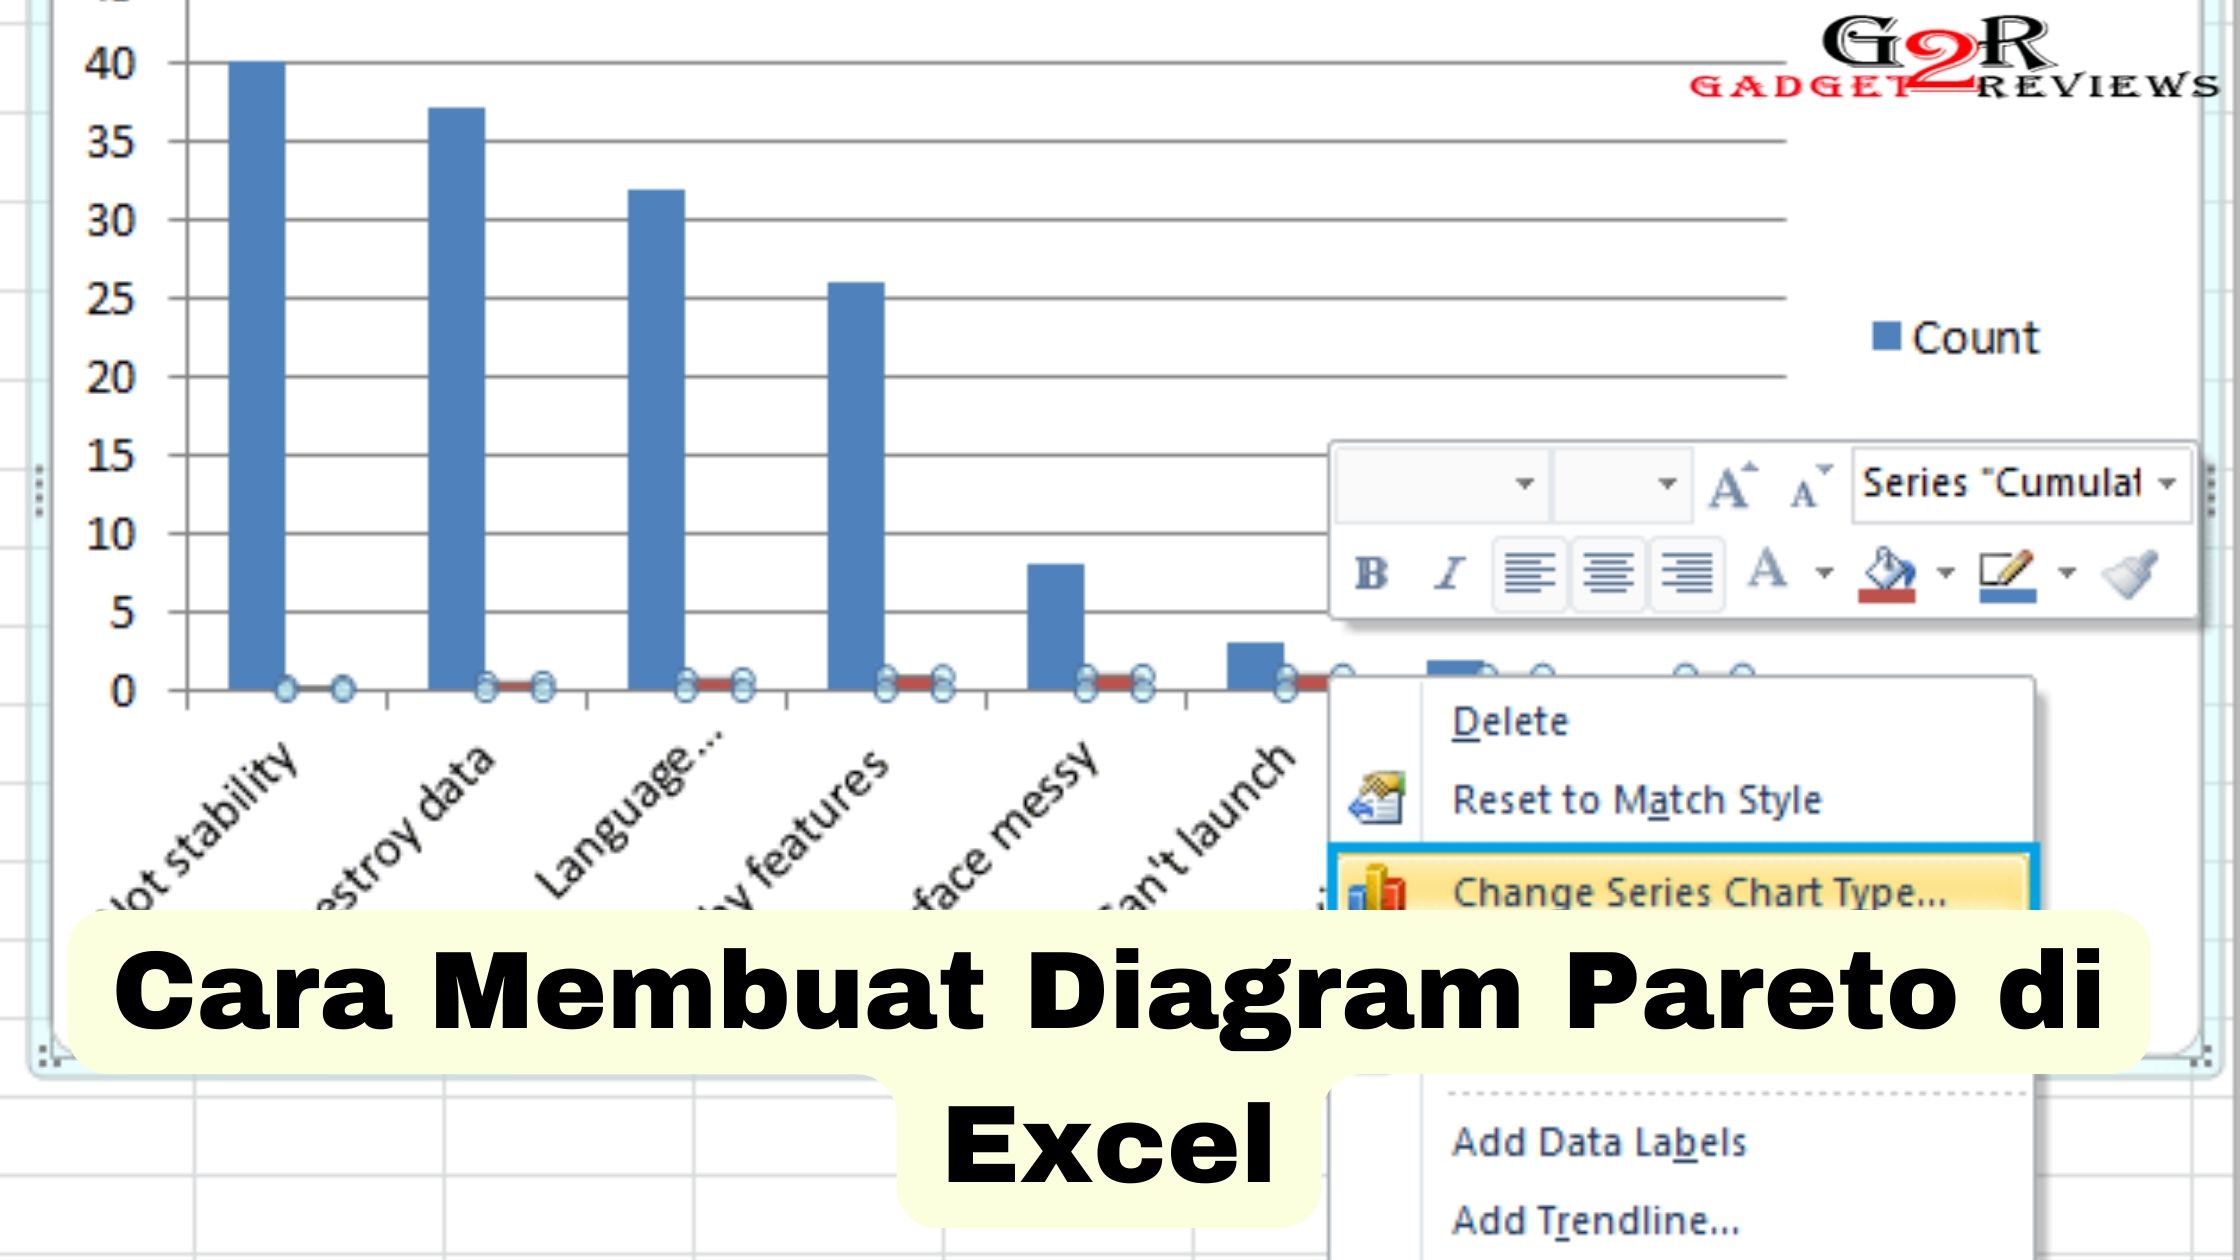 Cara Membuat Diagram Pareto di Excel